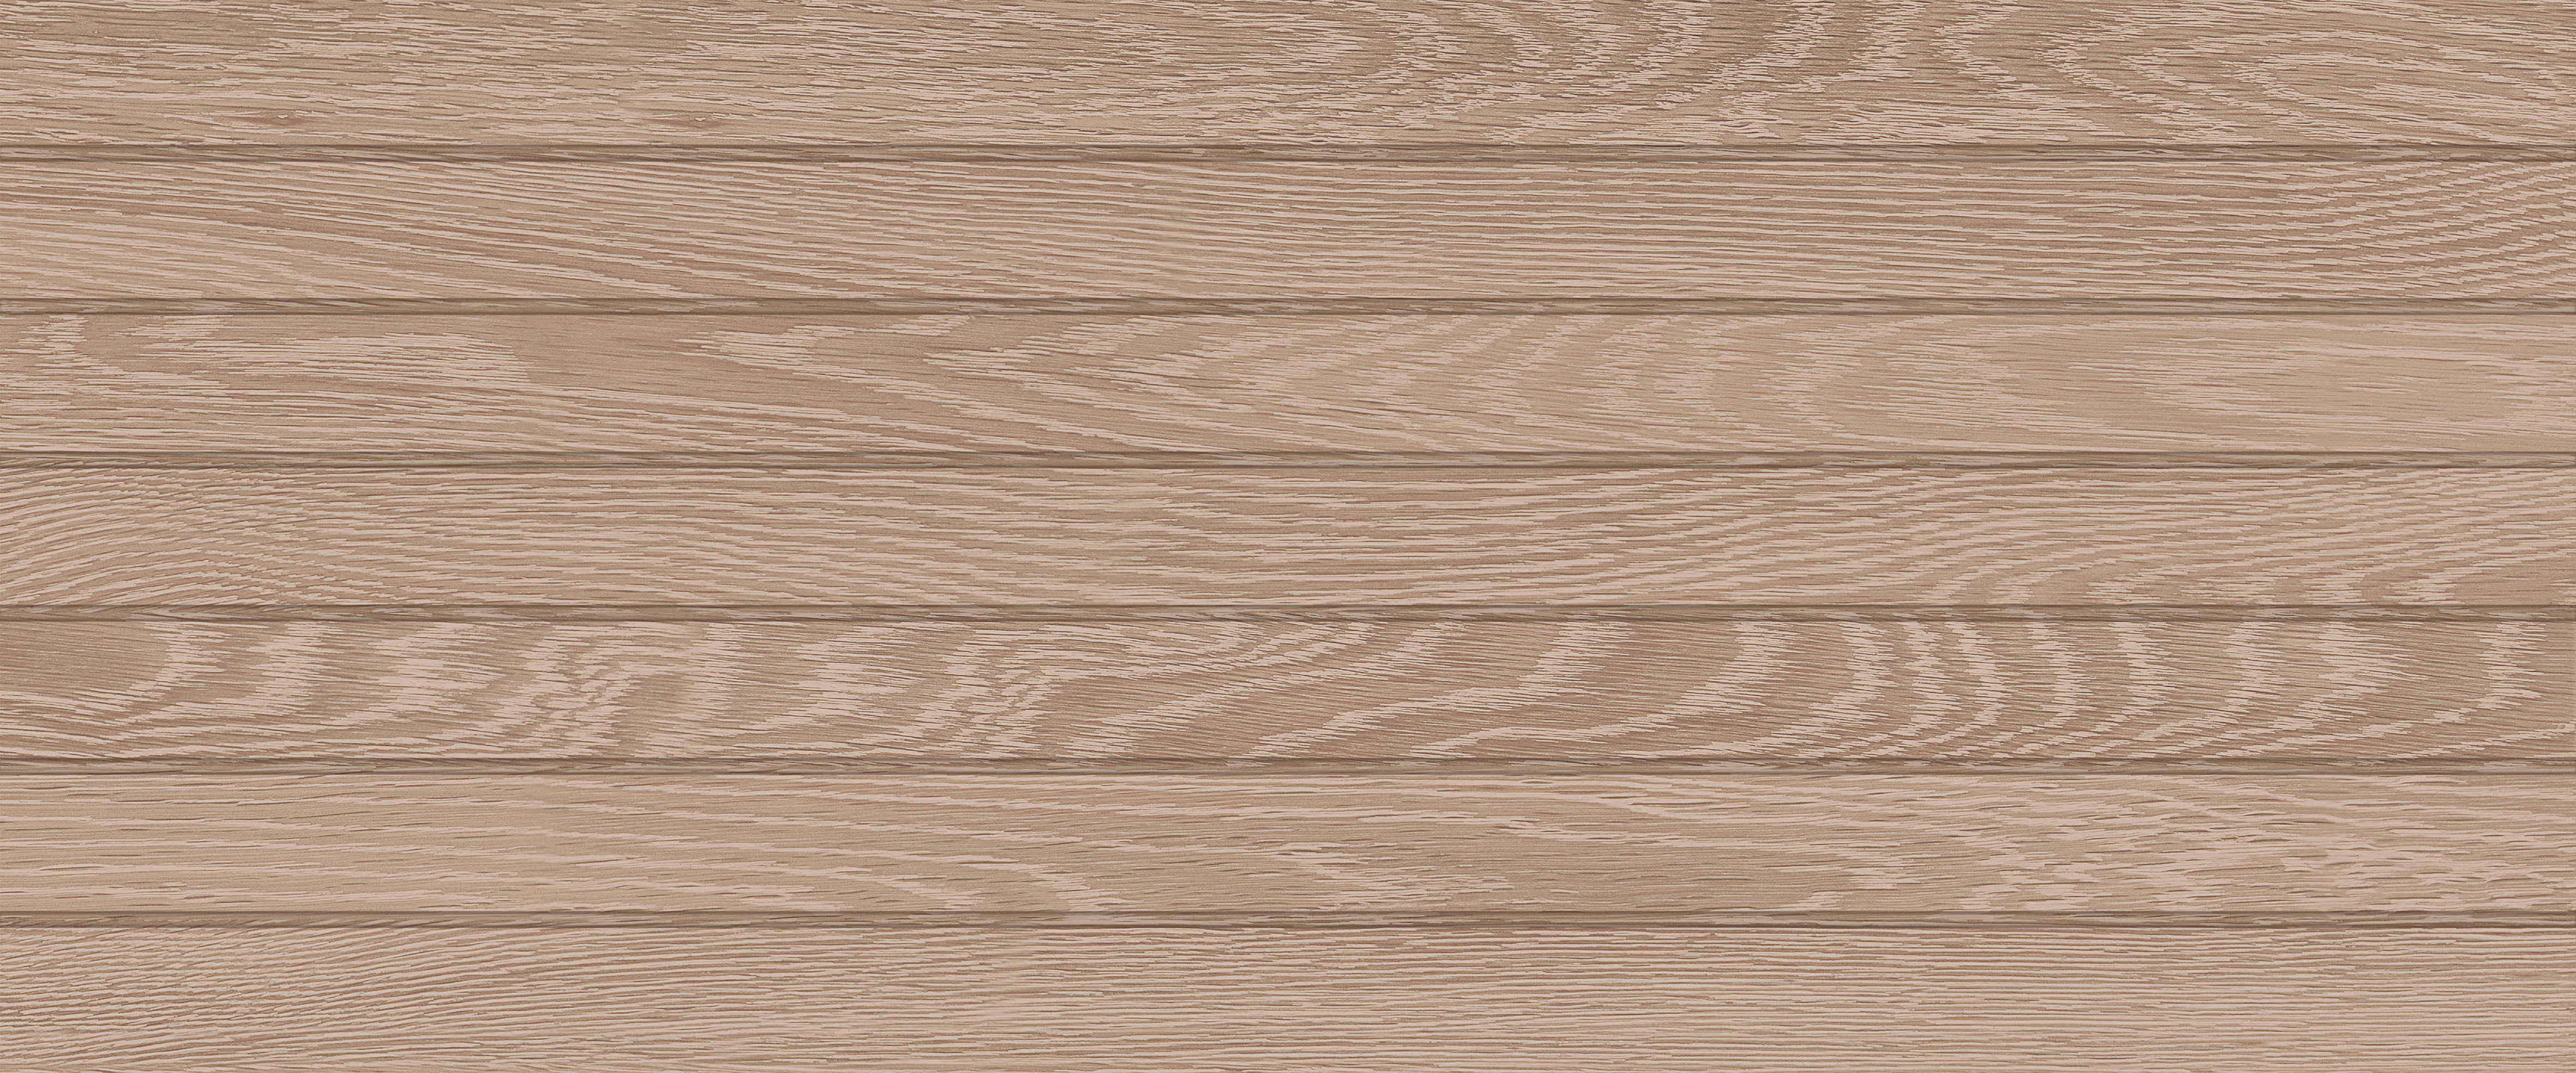 Настенная плитка Global Tile Eco Wood Бежевый 04 25x60 керамогранит progres wood бежевый матовый 60x60